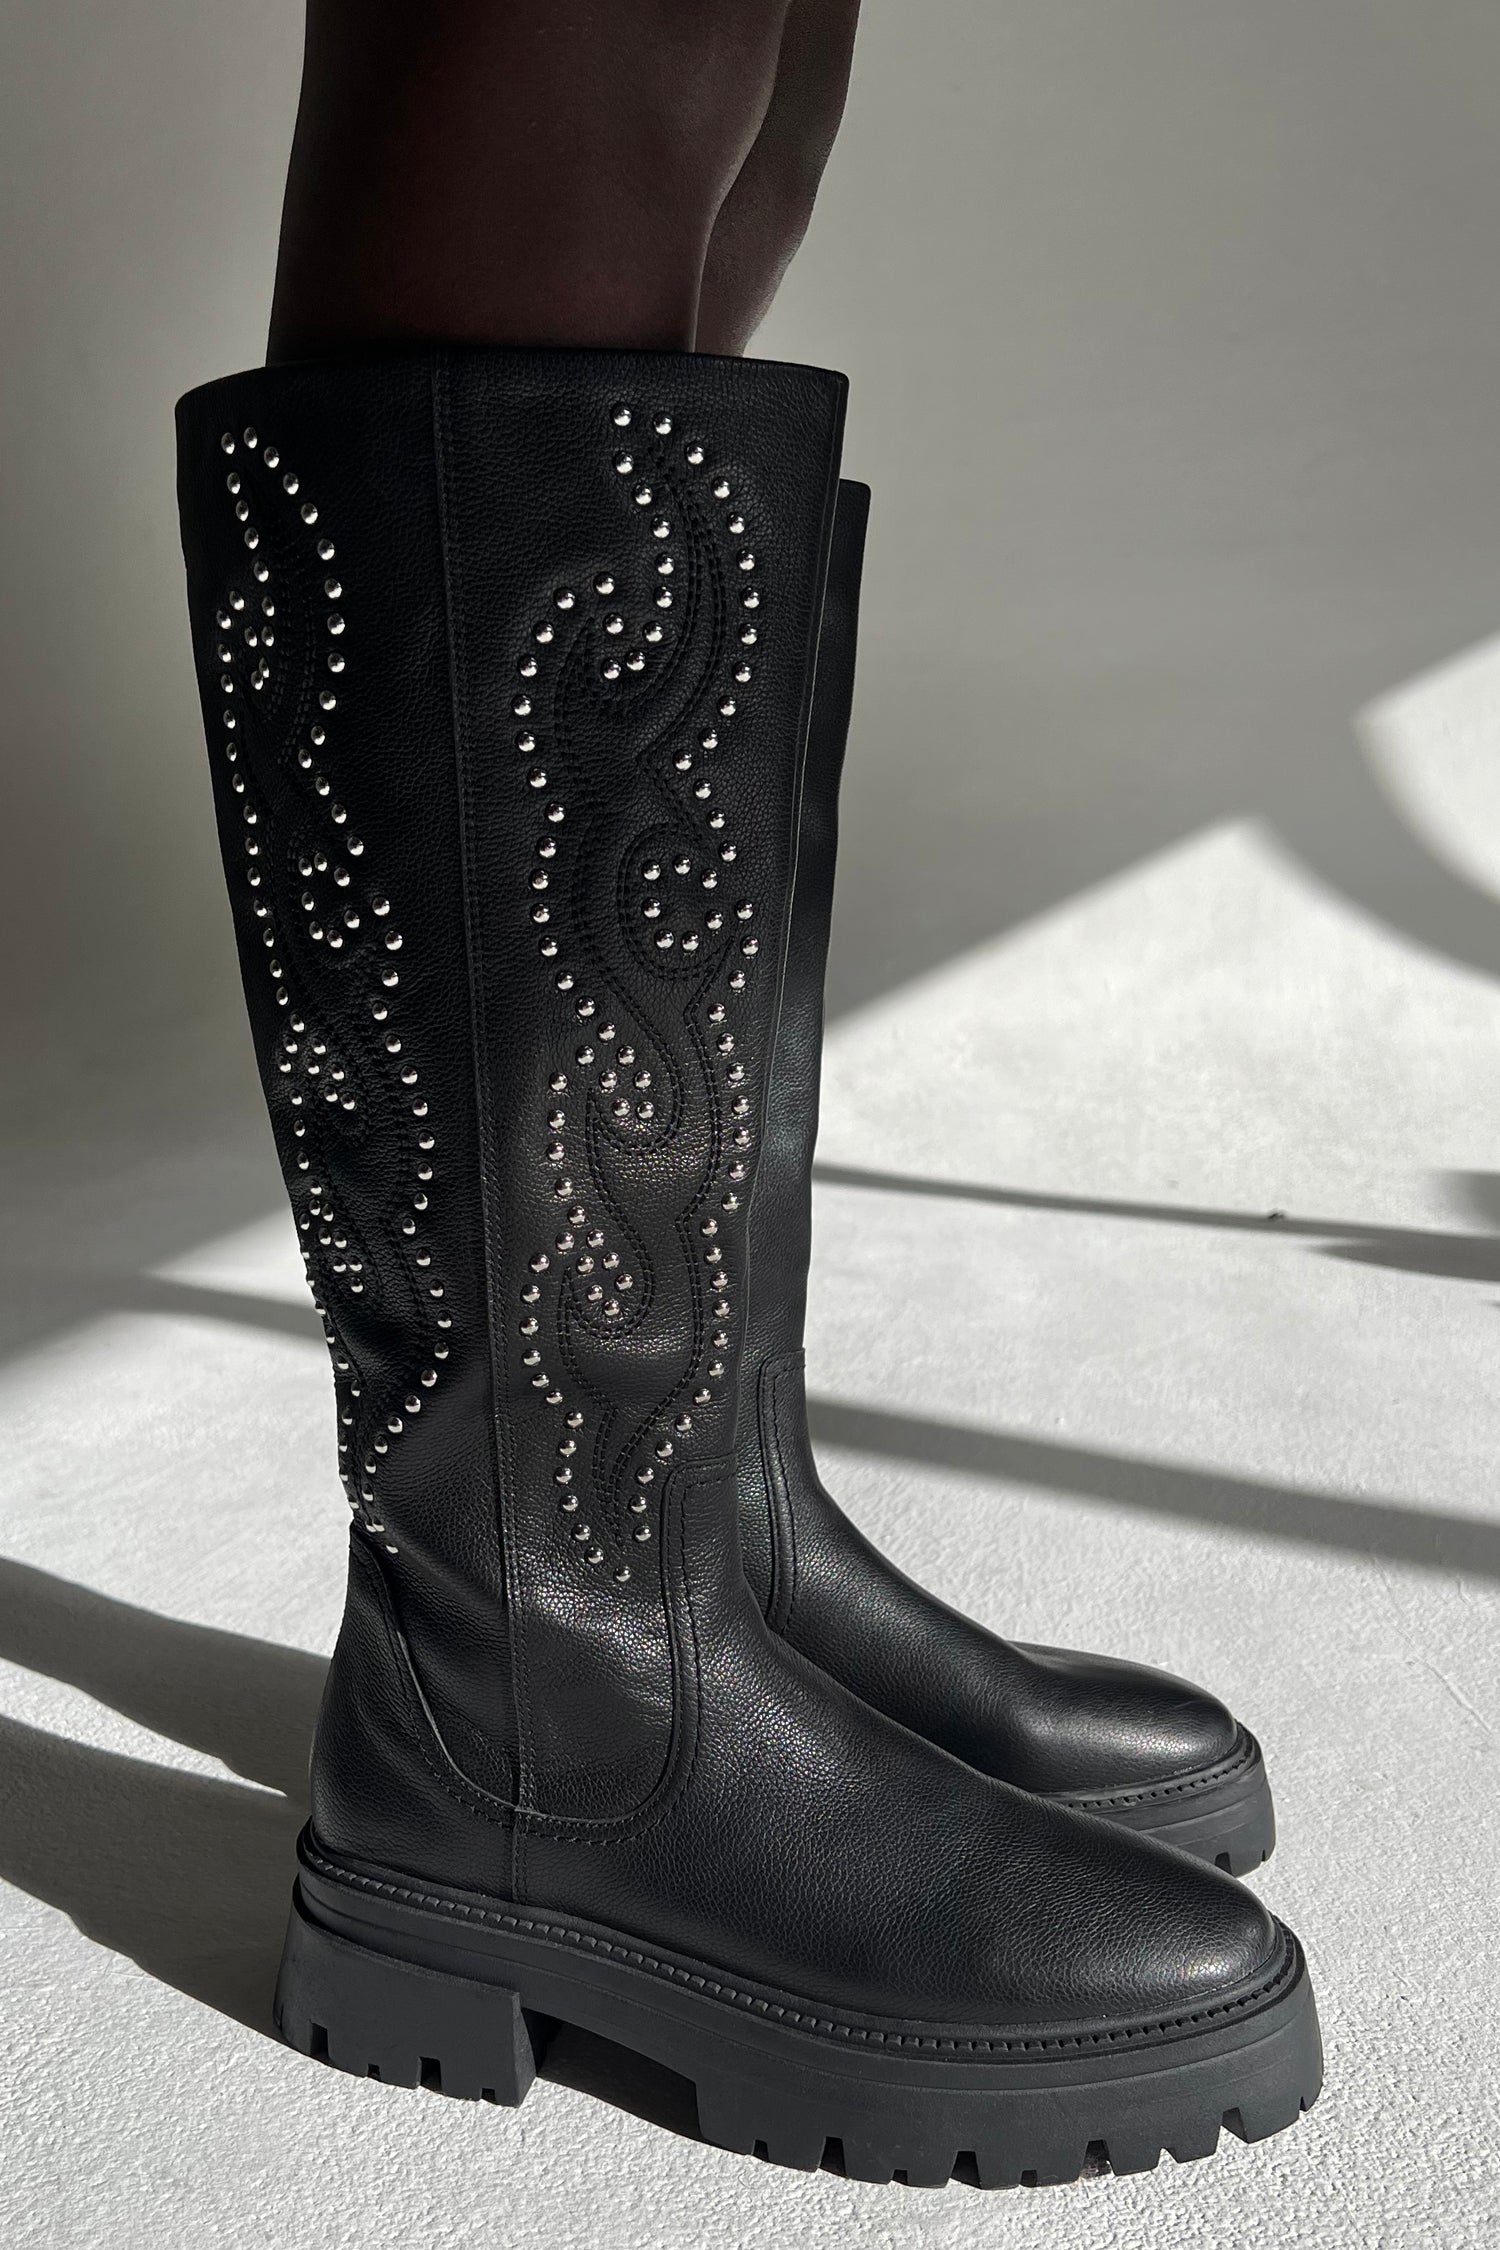 爆買い新作【MONI MONI】long studded boots BLACK 38 靴